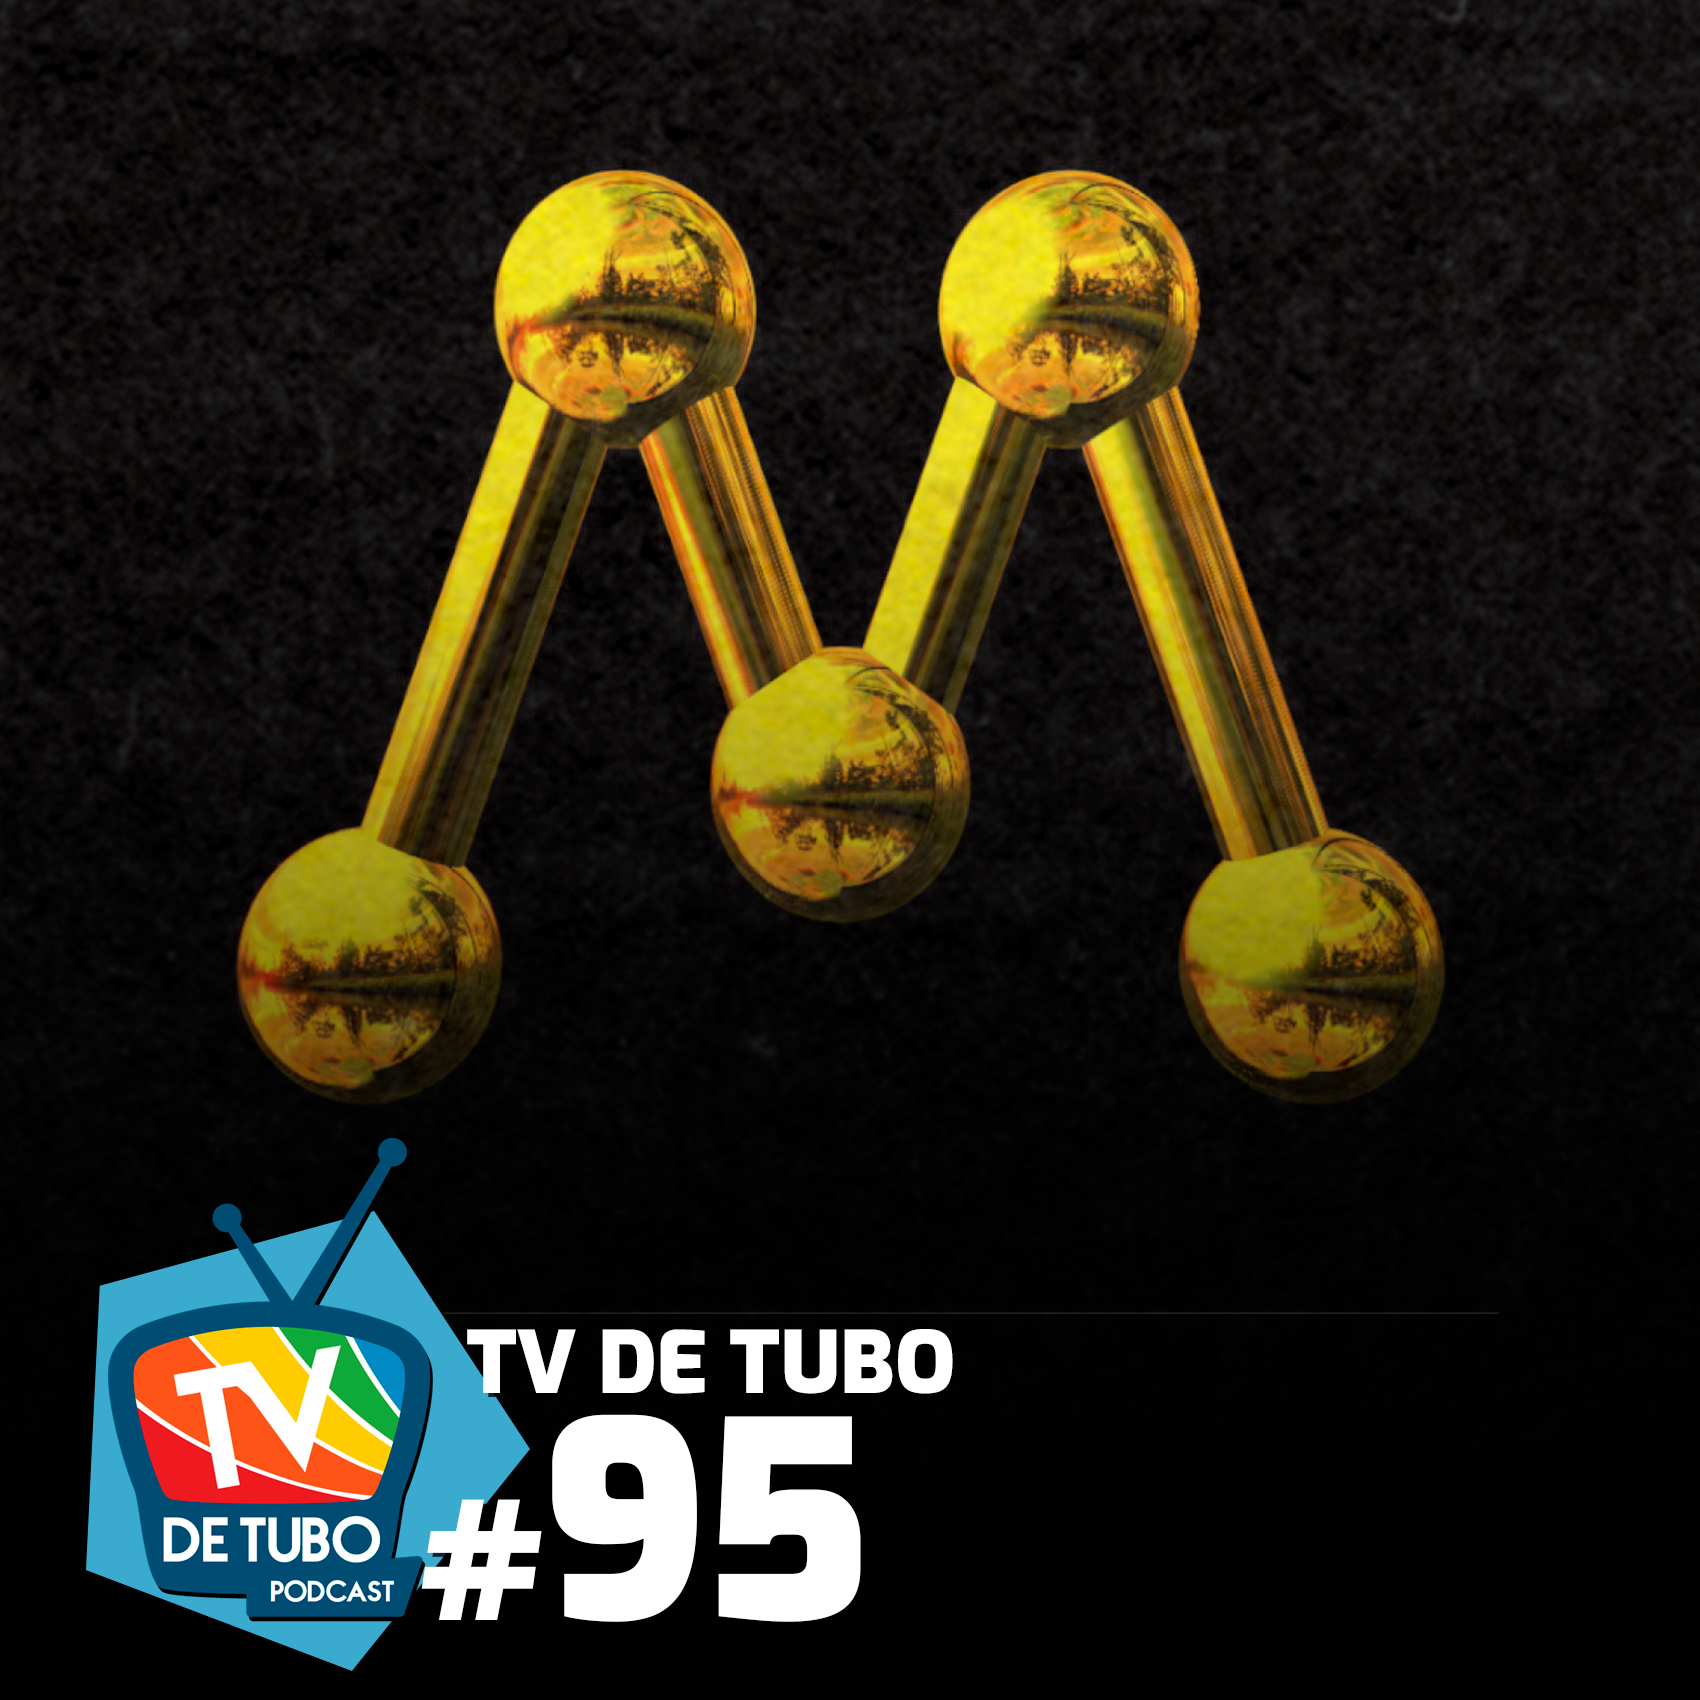 TV de Tubo #95 - Rede Manchete